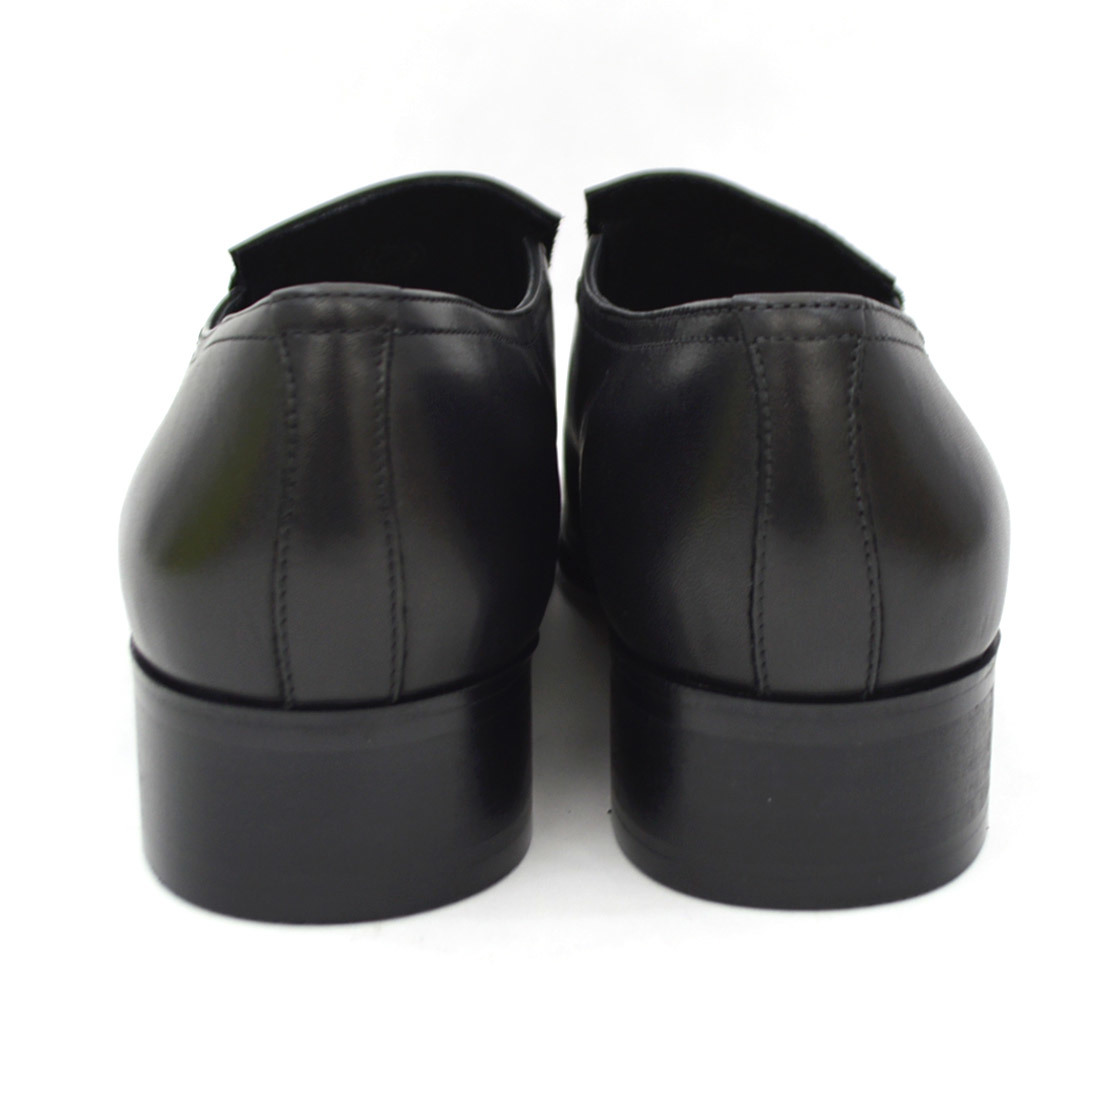 ▲KATHARINE HAMNETT キャサリン ハムネット KH3992 ビジネスシューズ 本革 紳士靴 革靴 ブラック Black 黒 24.5cm (0910010654-bk-s245)_画像5